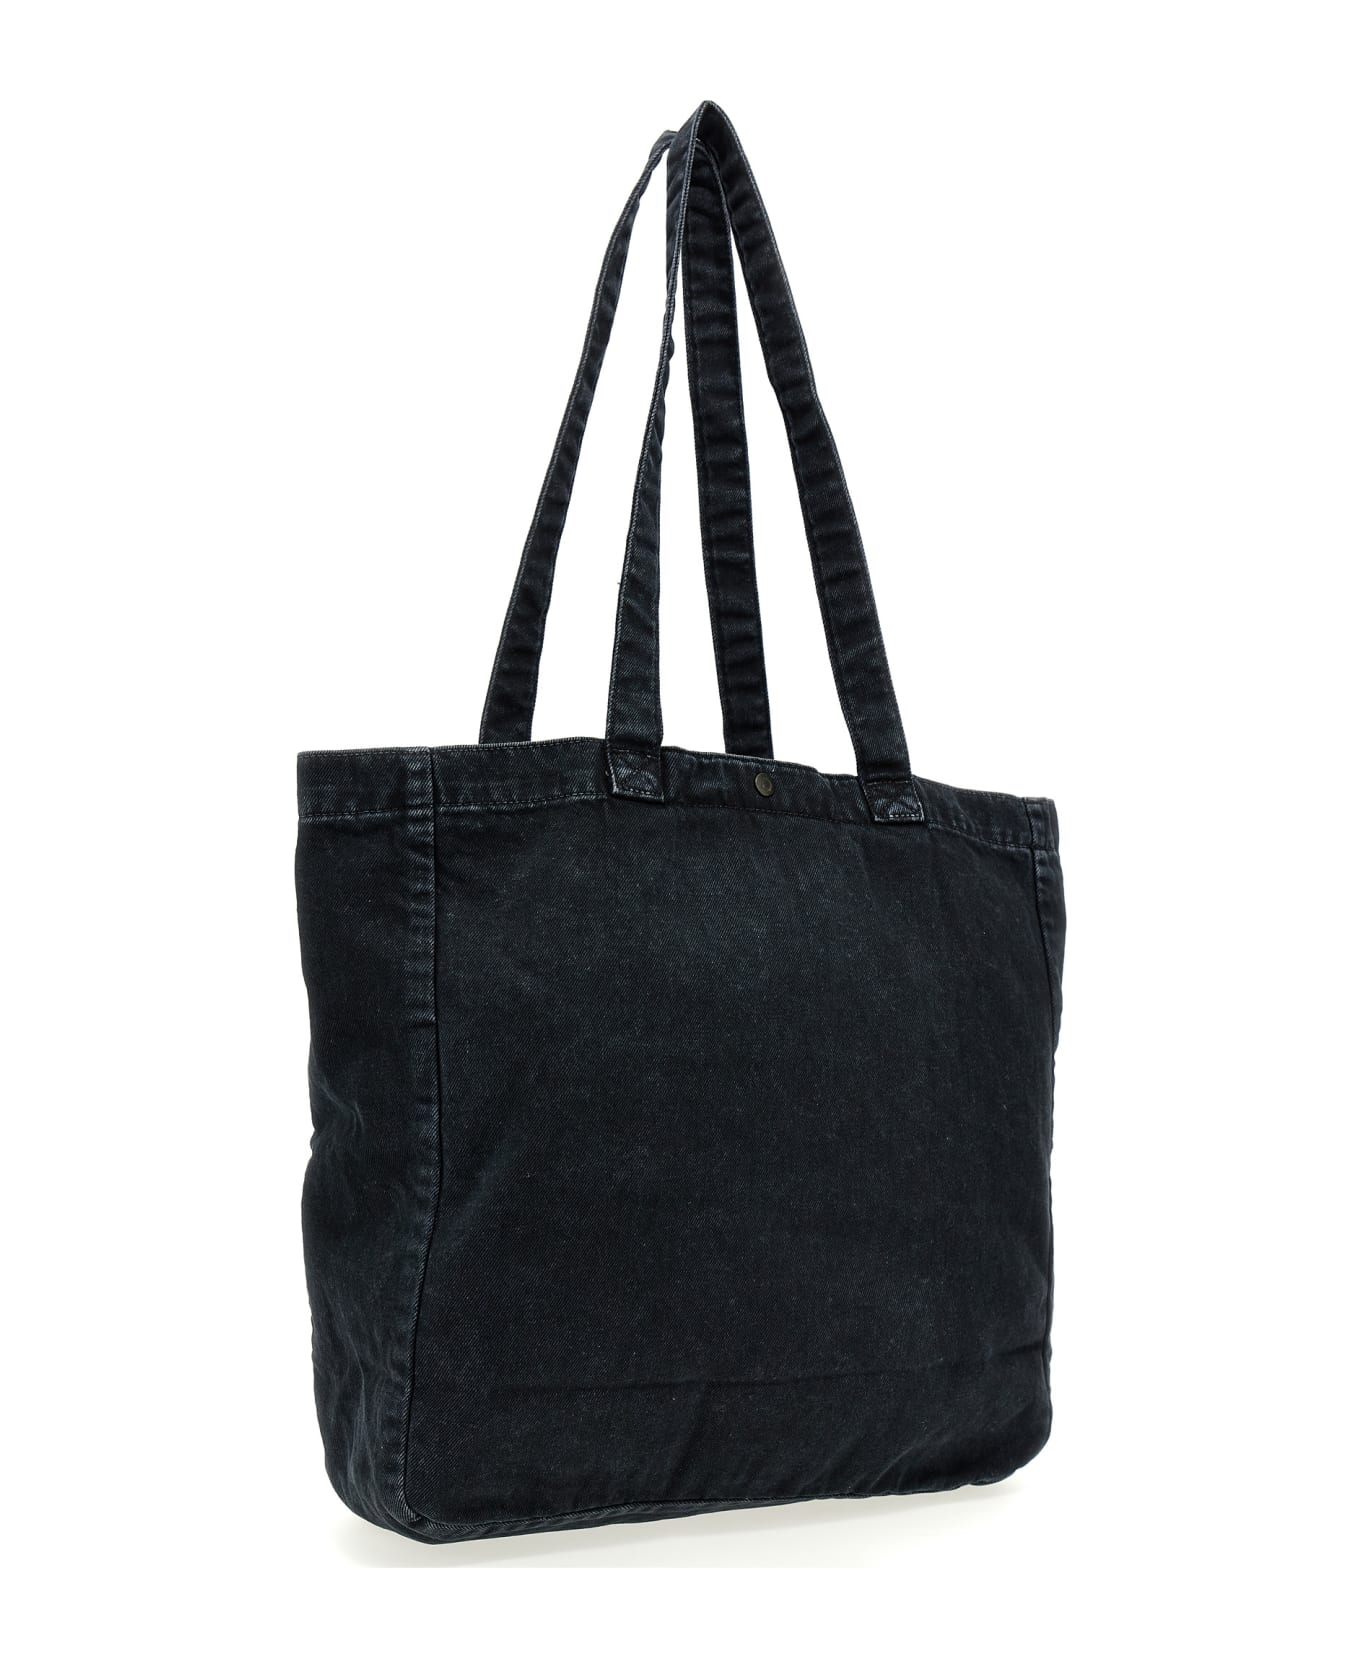 Carhartt 'garrison' Shopping Bag - Black   トートバッグ